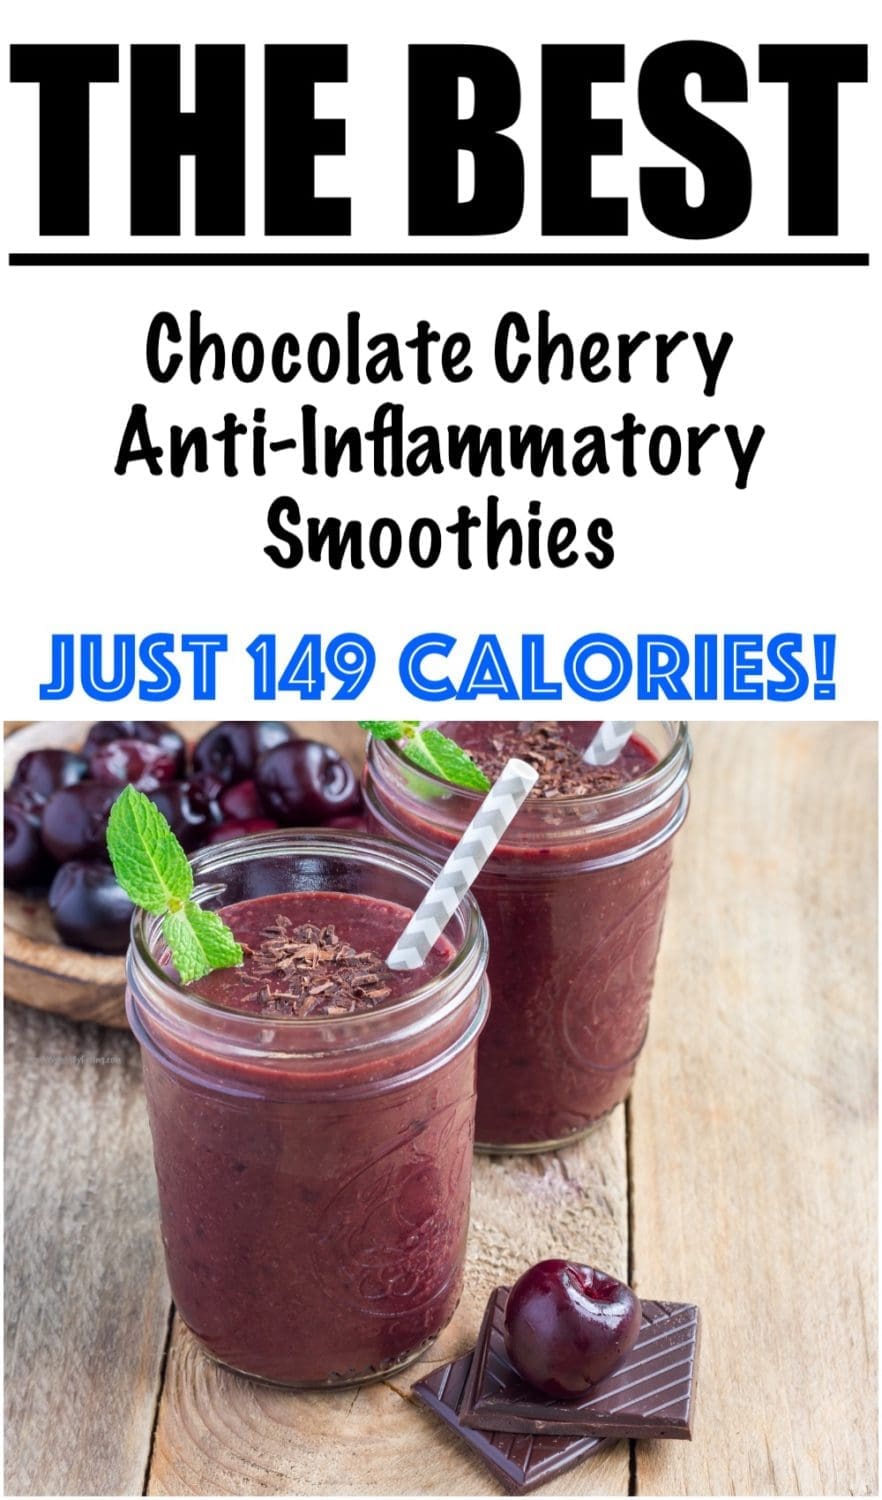 Chocolate Cherry Anti-Inflammatory Smoothies